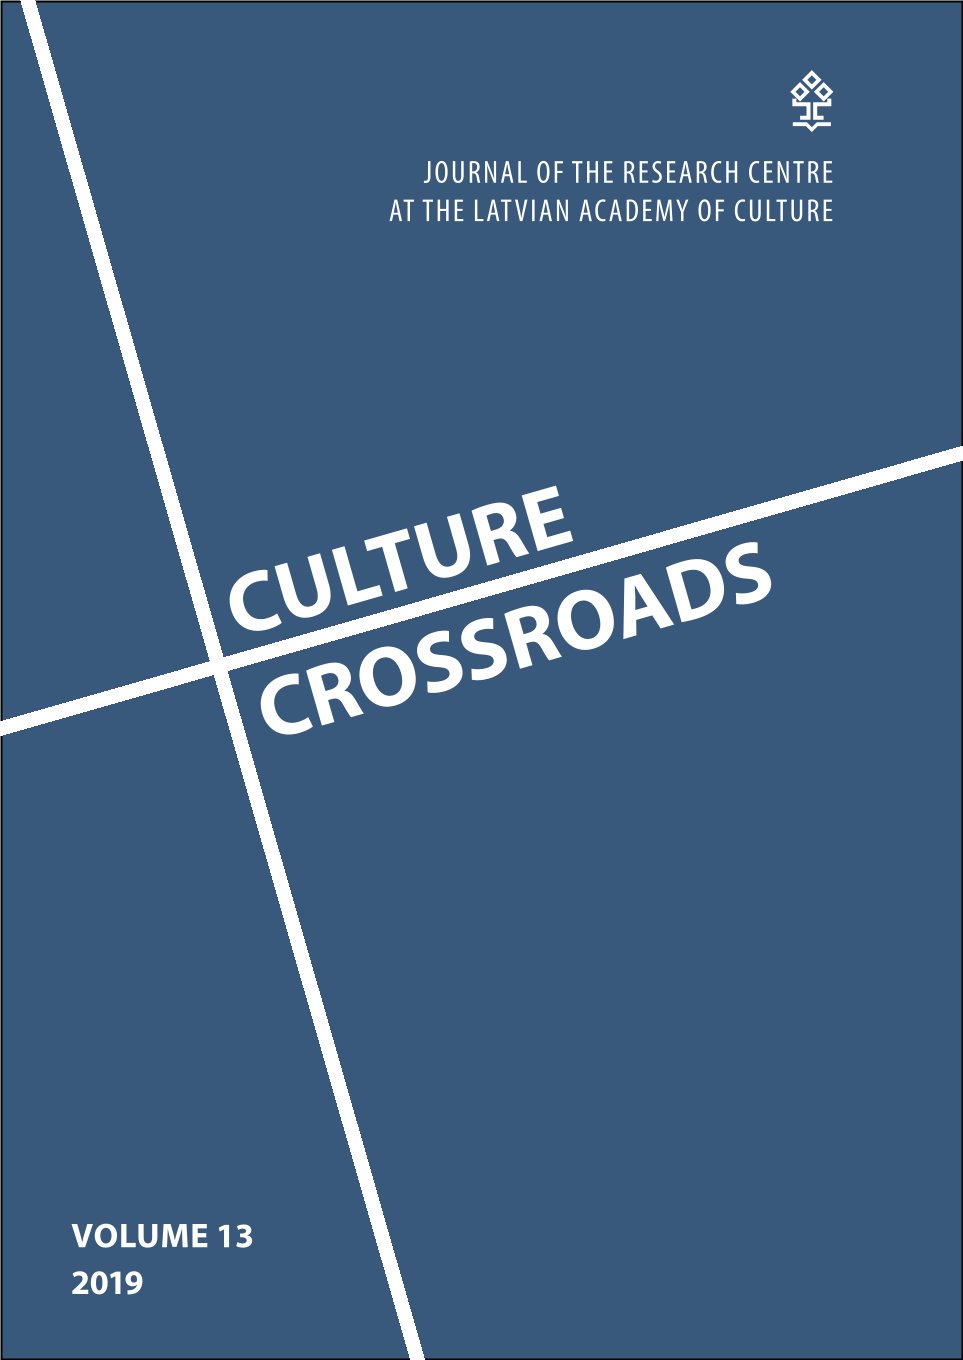 					View Vol. 13 (2019): Culture Crossroads
				